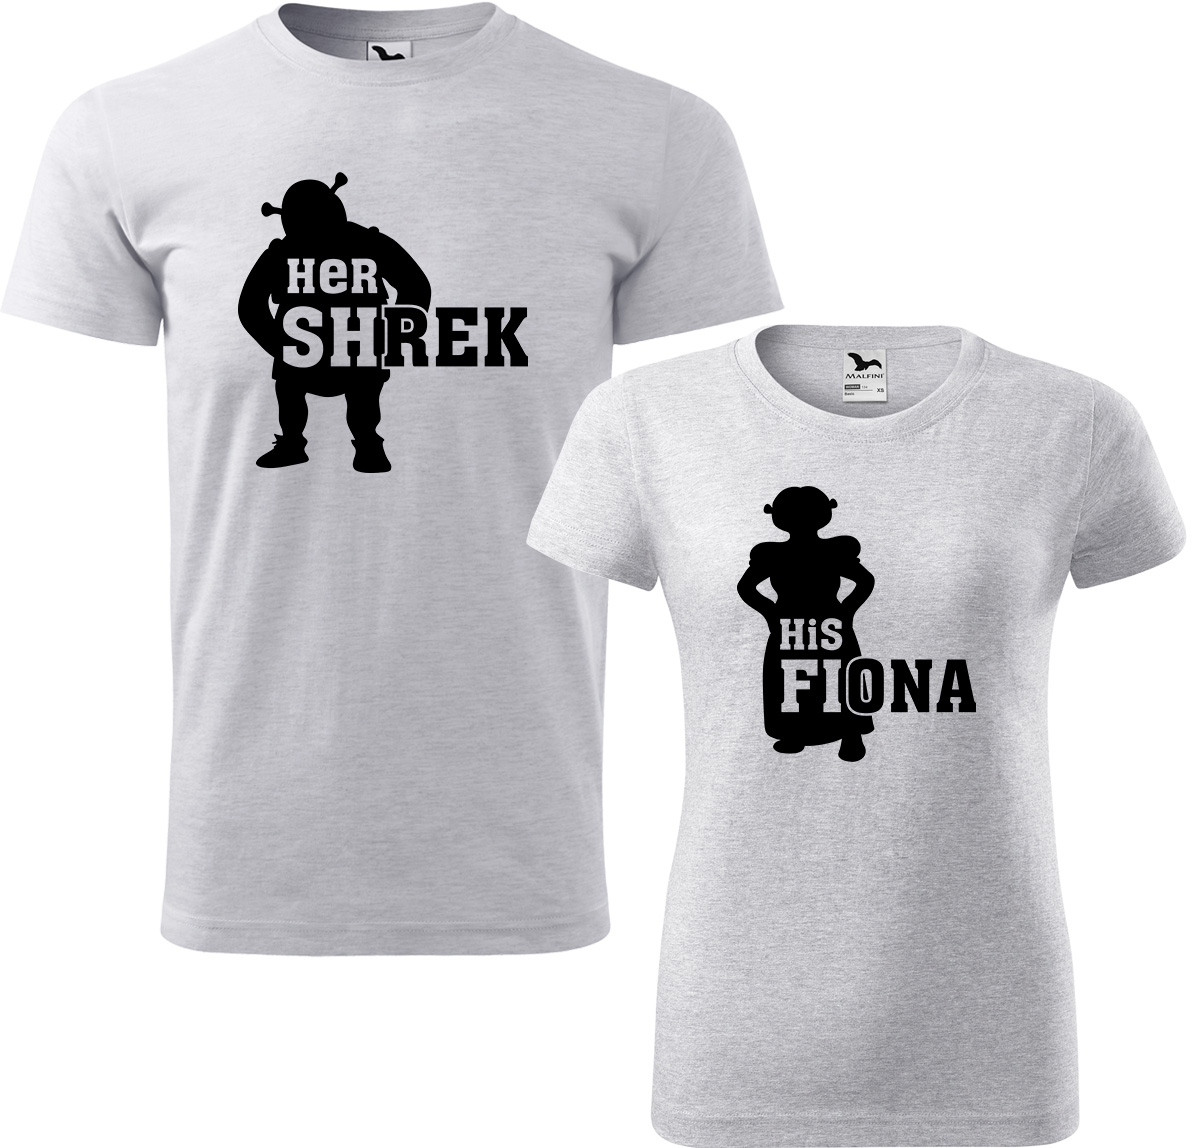 Trička pro páry - Shrek a Fiona Barva: Světle šedý melír (03), Velikost dámské tričko: L, Velikost pánské tričko: L